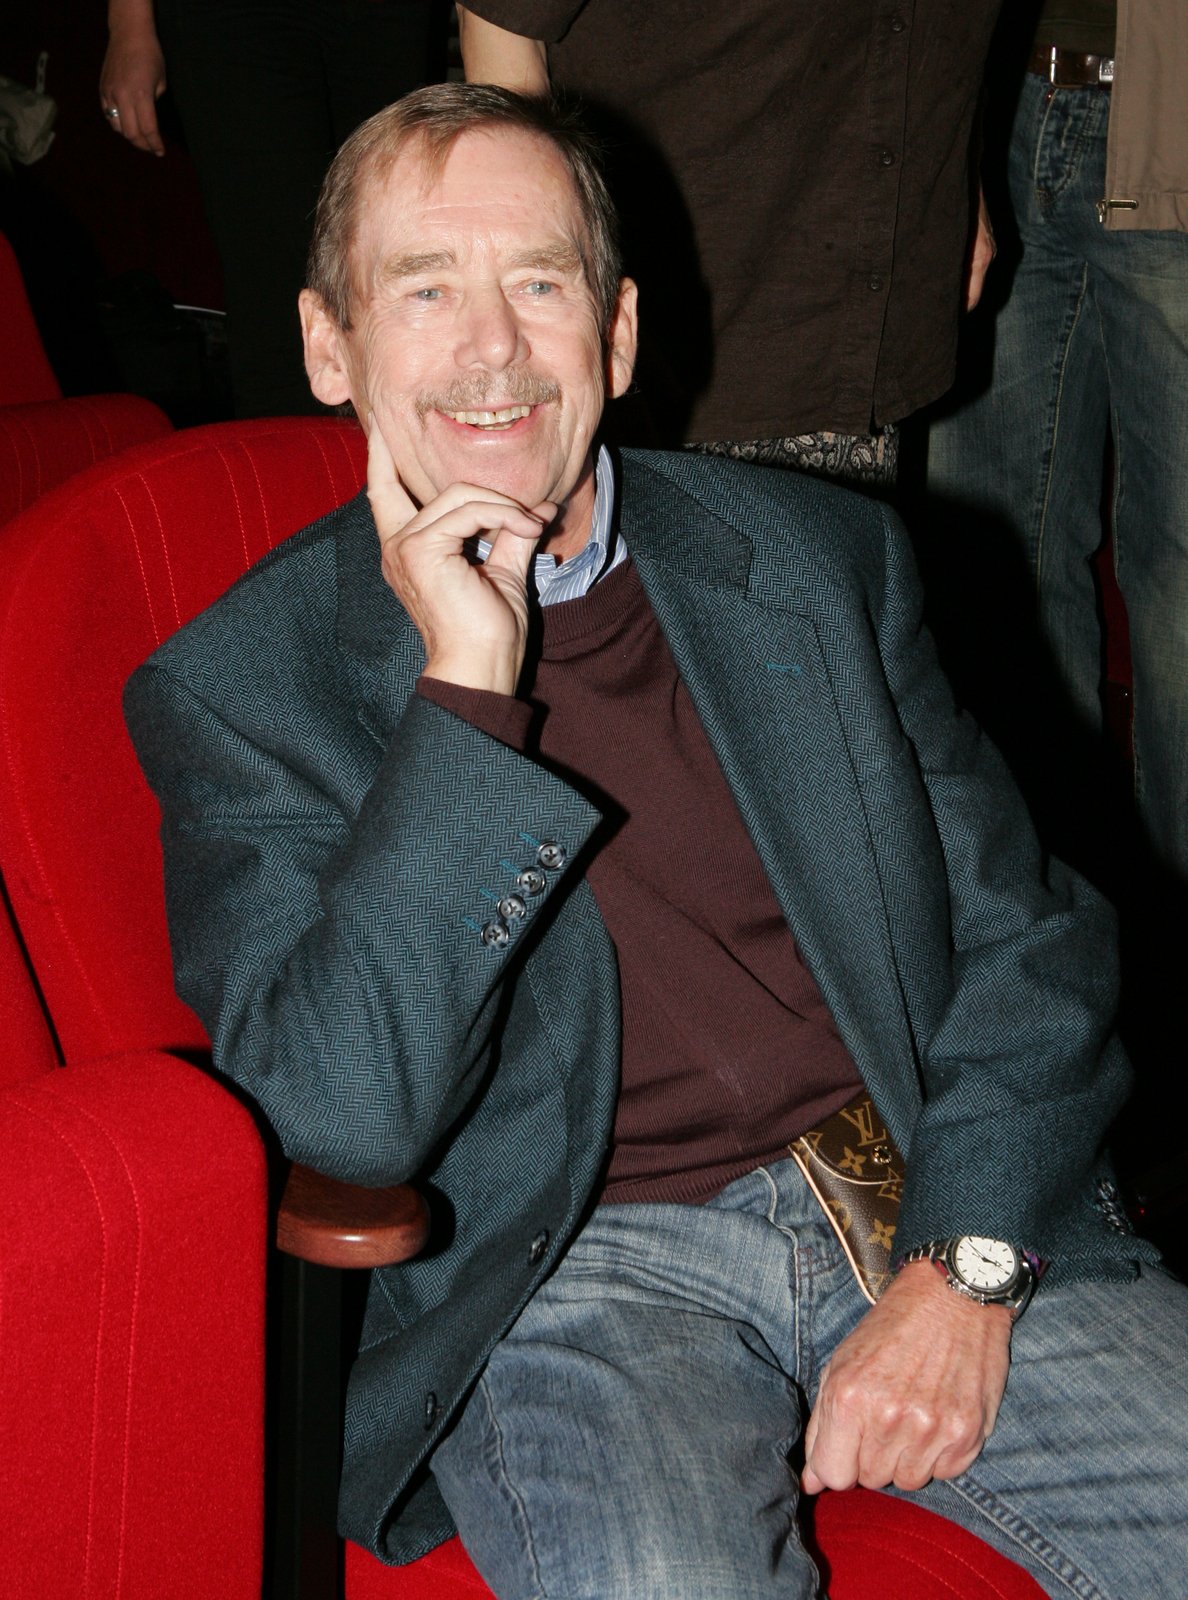 Václav Havel